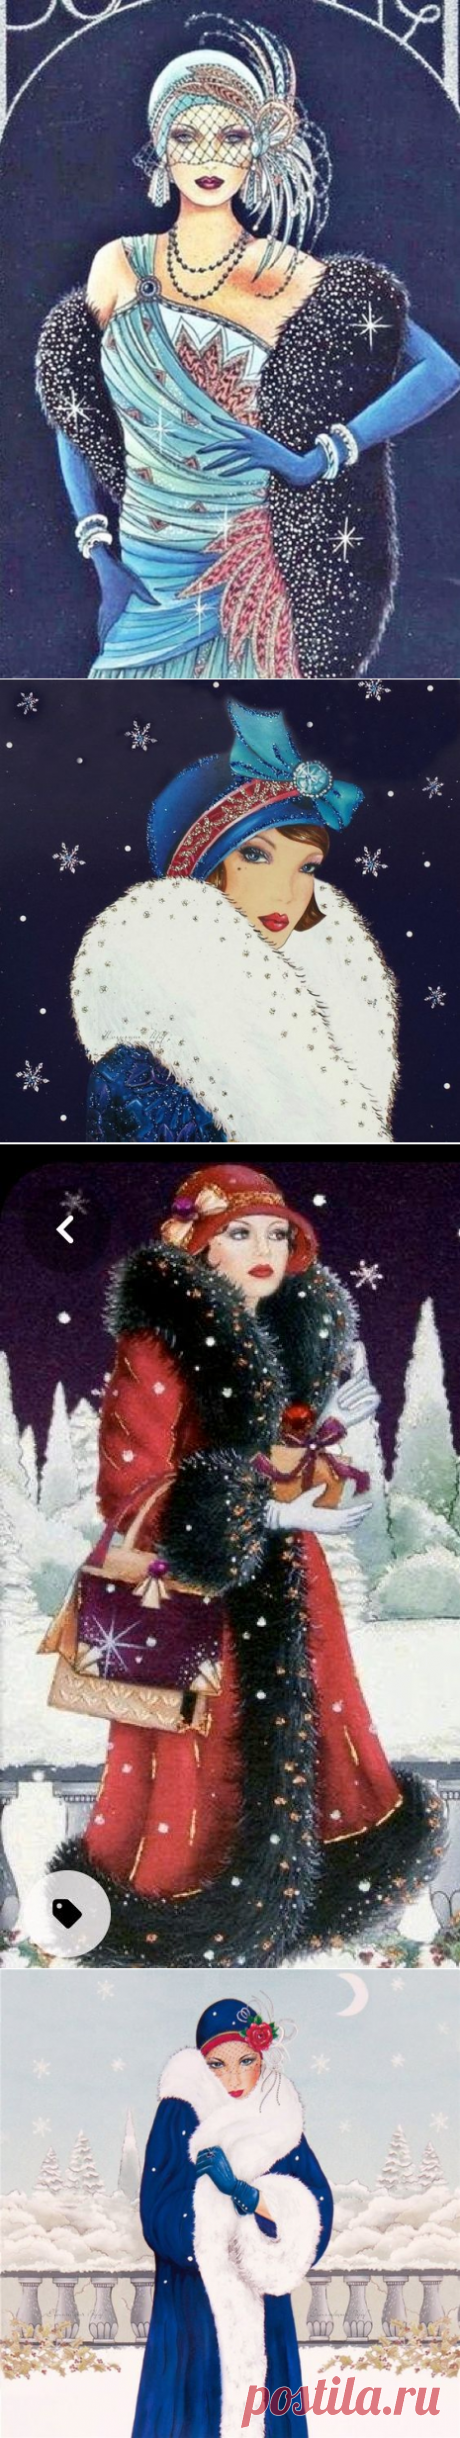 Зимние иллюстрации в стиле Арт-деко